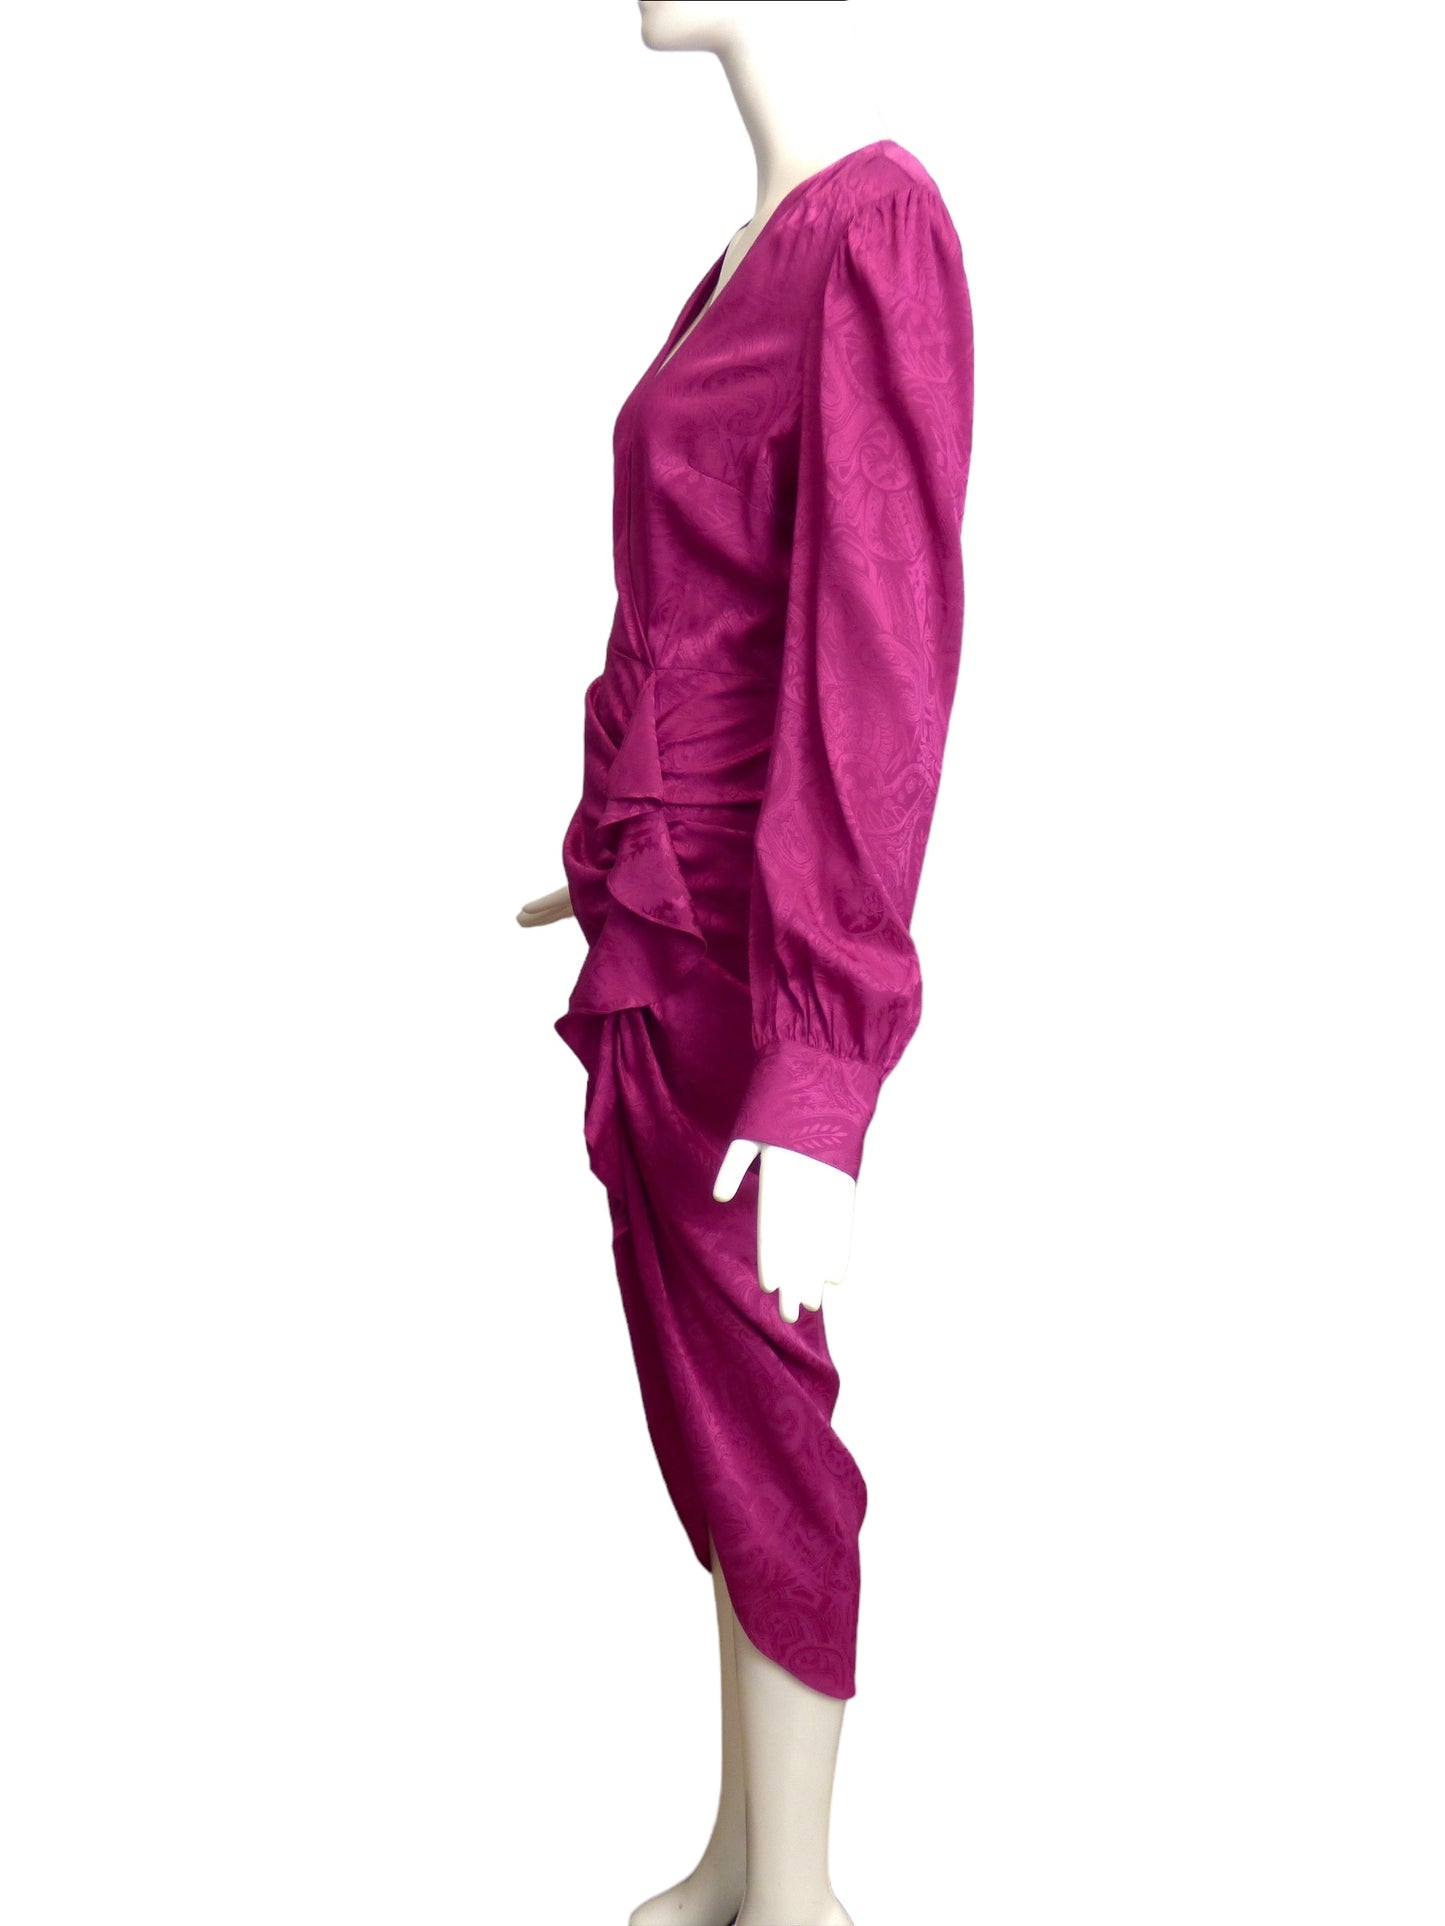 VERONICA BEARD- NWT Jacquard Weiss Dress, Size 6